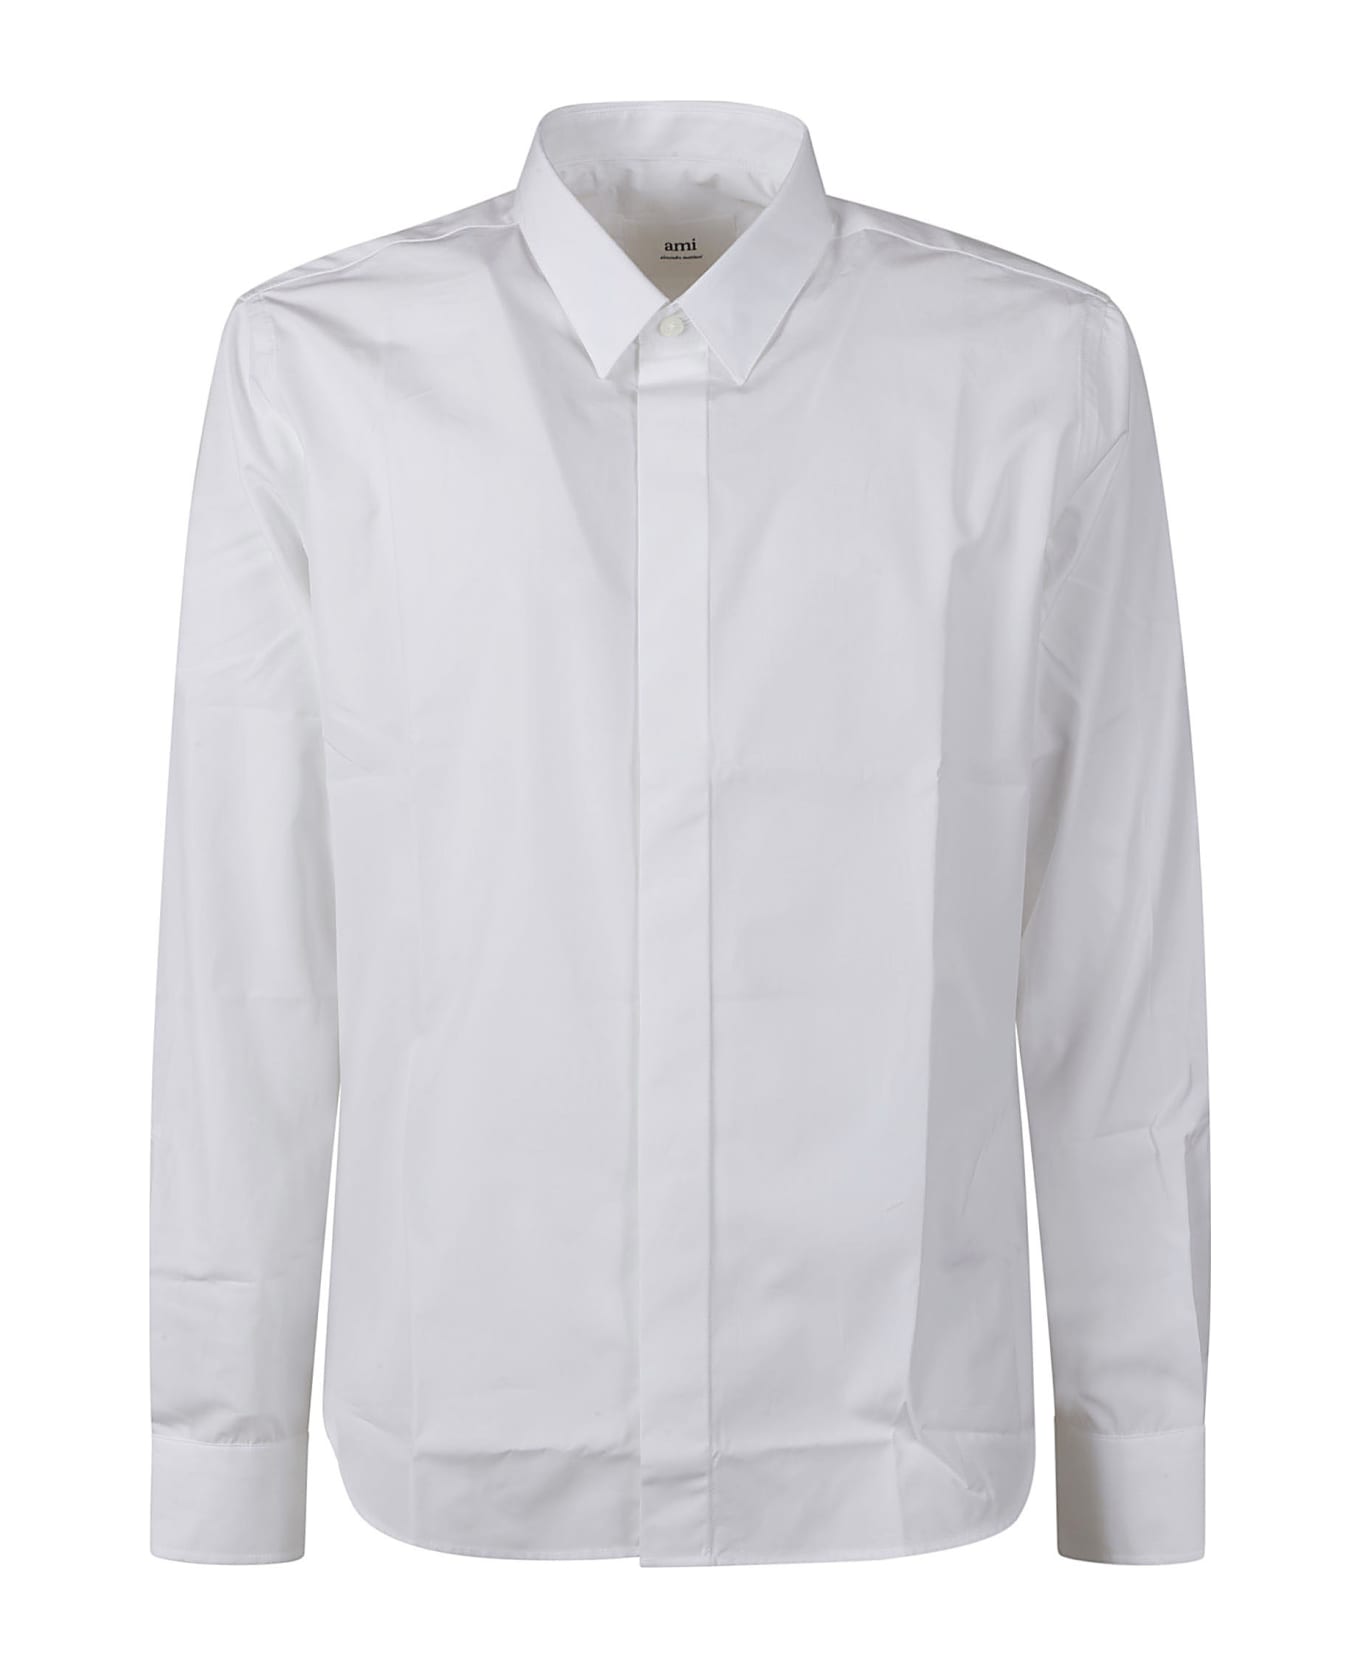 Ami Alexandre Mattiussi Round Hem Plain Shirt - White